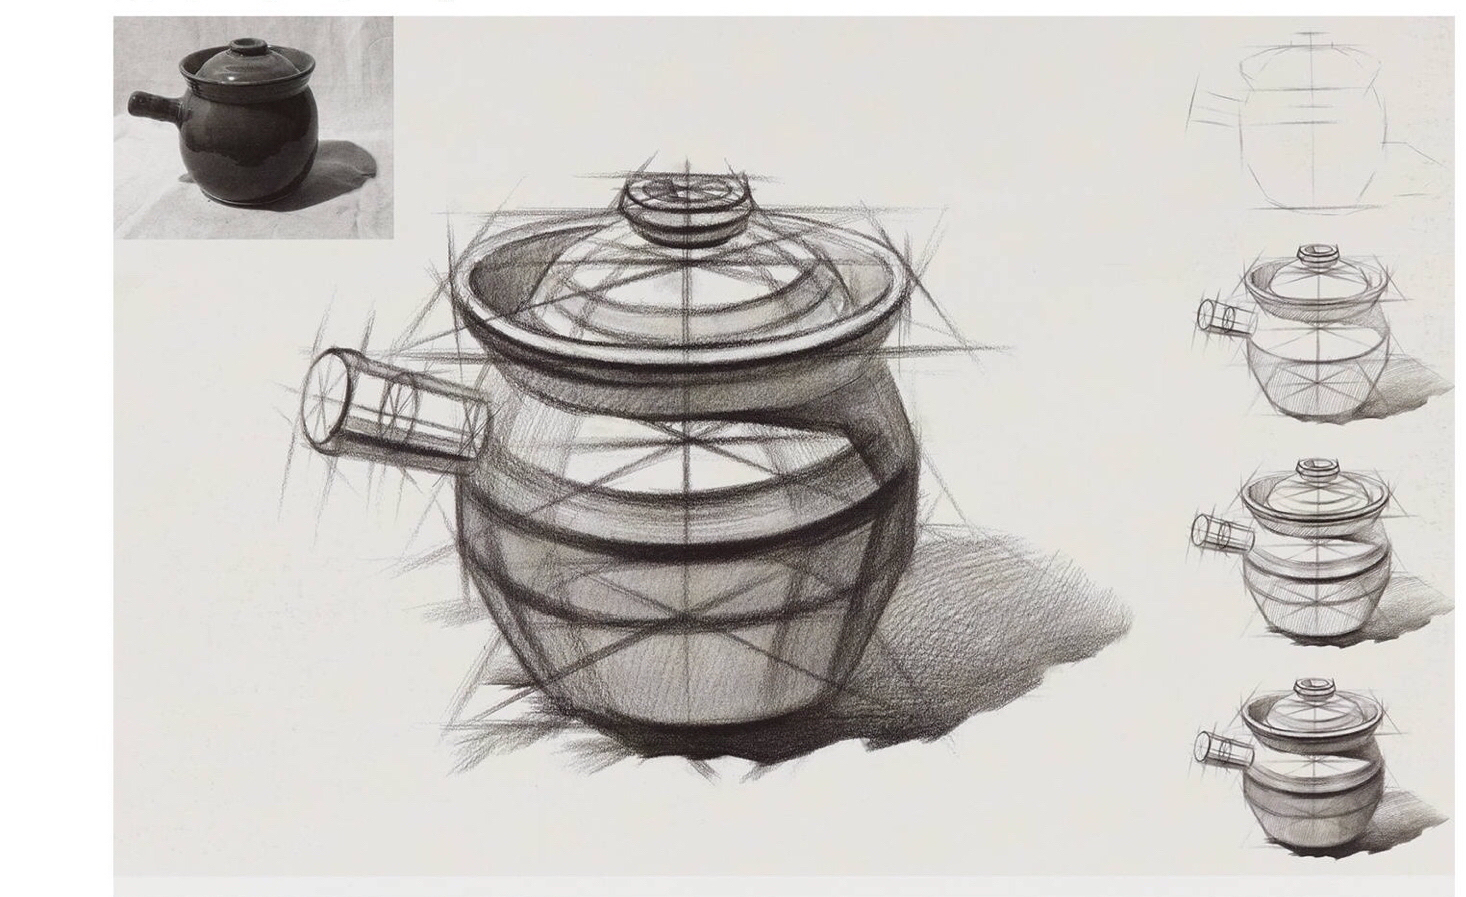 a组(一周一次作业) 王佳琪,左方祺:一个瓦罐结构素描 一个罐子明暗